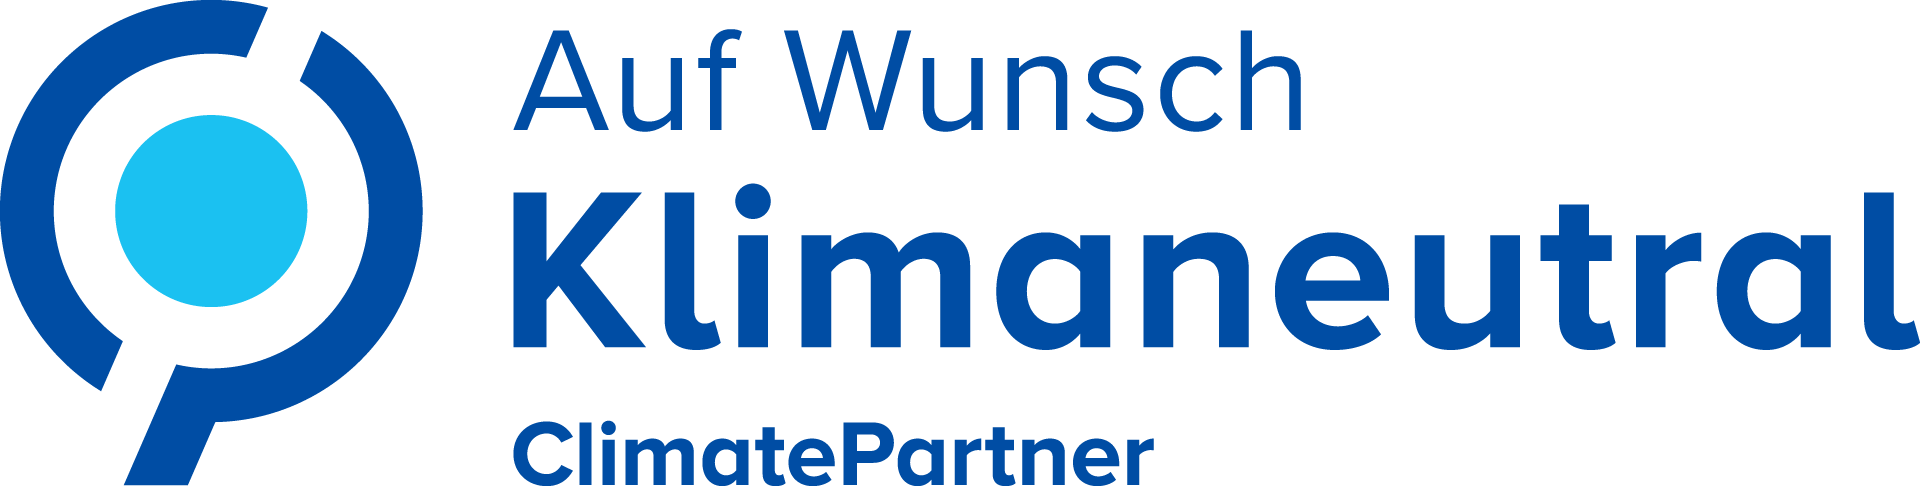 Logo Auf Wunsch klimaneutral